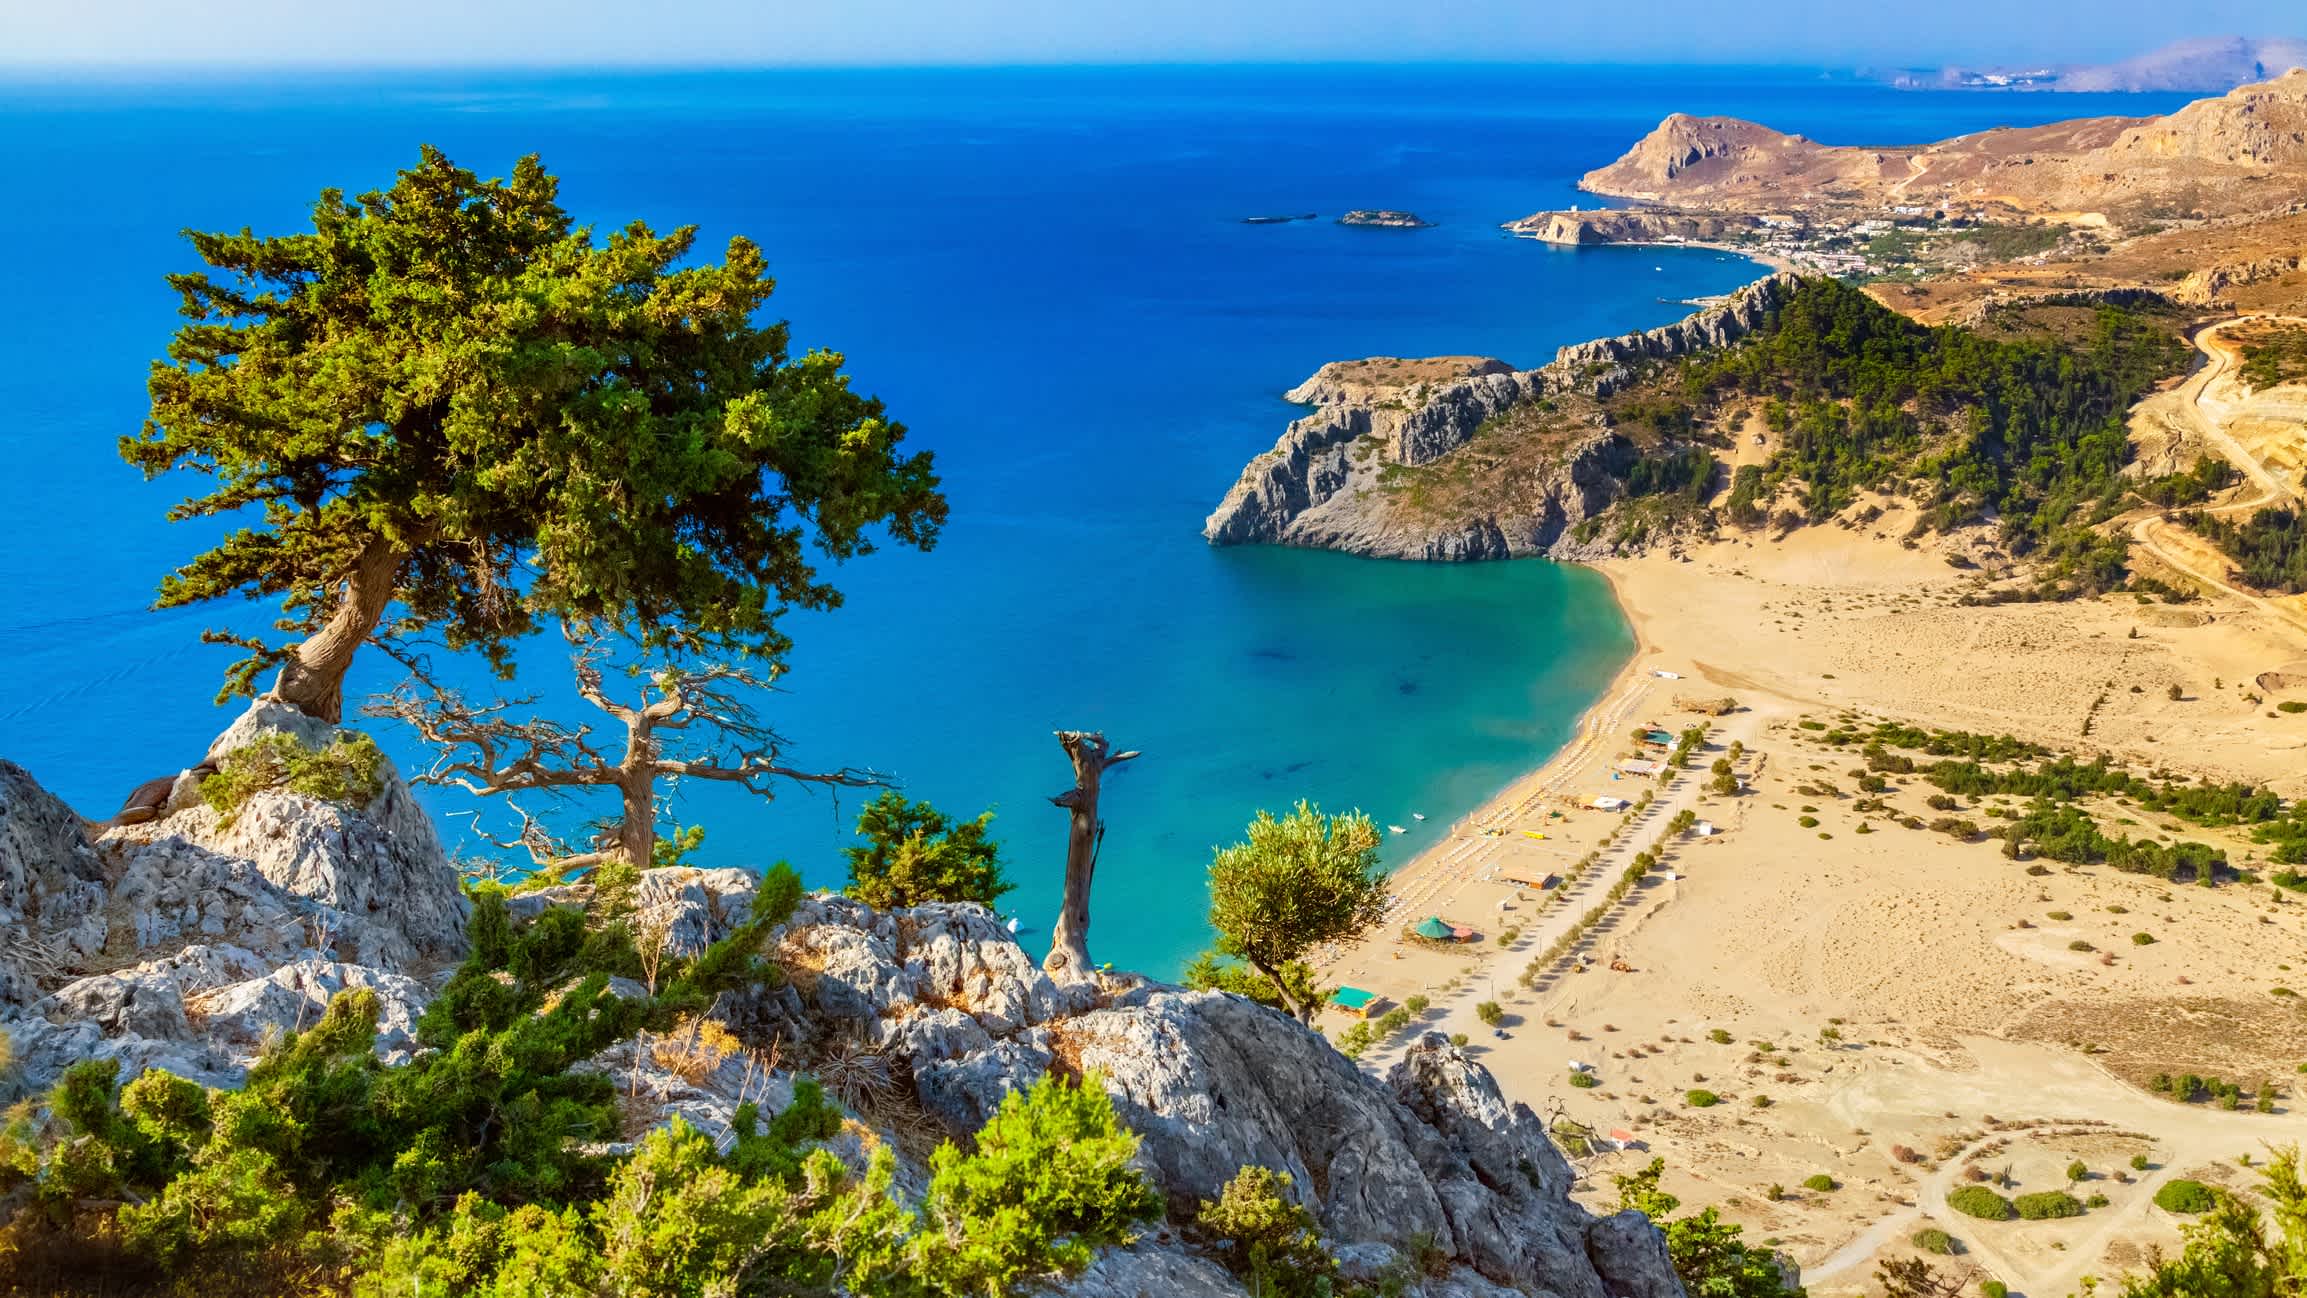 Ein Panorama des Strandes von Tsampika in Rhodos, Griechenland mit Blick auf den goldenen Sand und das blaugrüne Meer sowie Bergen im Hintergrund und Bäume.